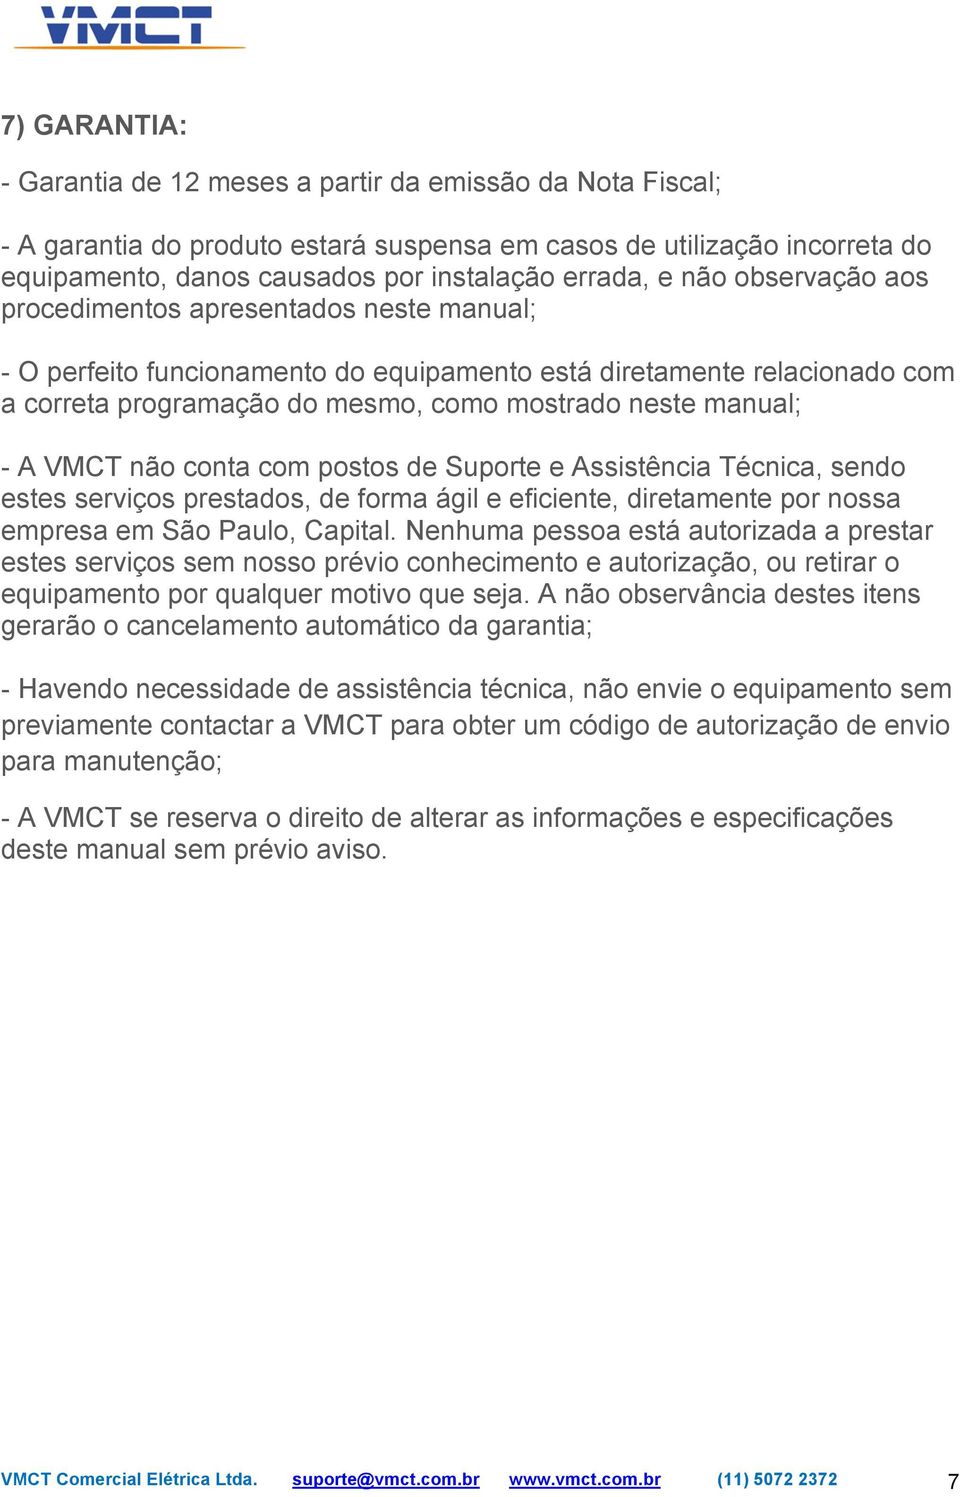 A VMCT não conta com postos de Suporte e Assistência Técnica, sendo estes serviços prestados, de forma ágil e eficiente, diretamente por nossa empresa em São Paulo, Capital.